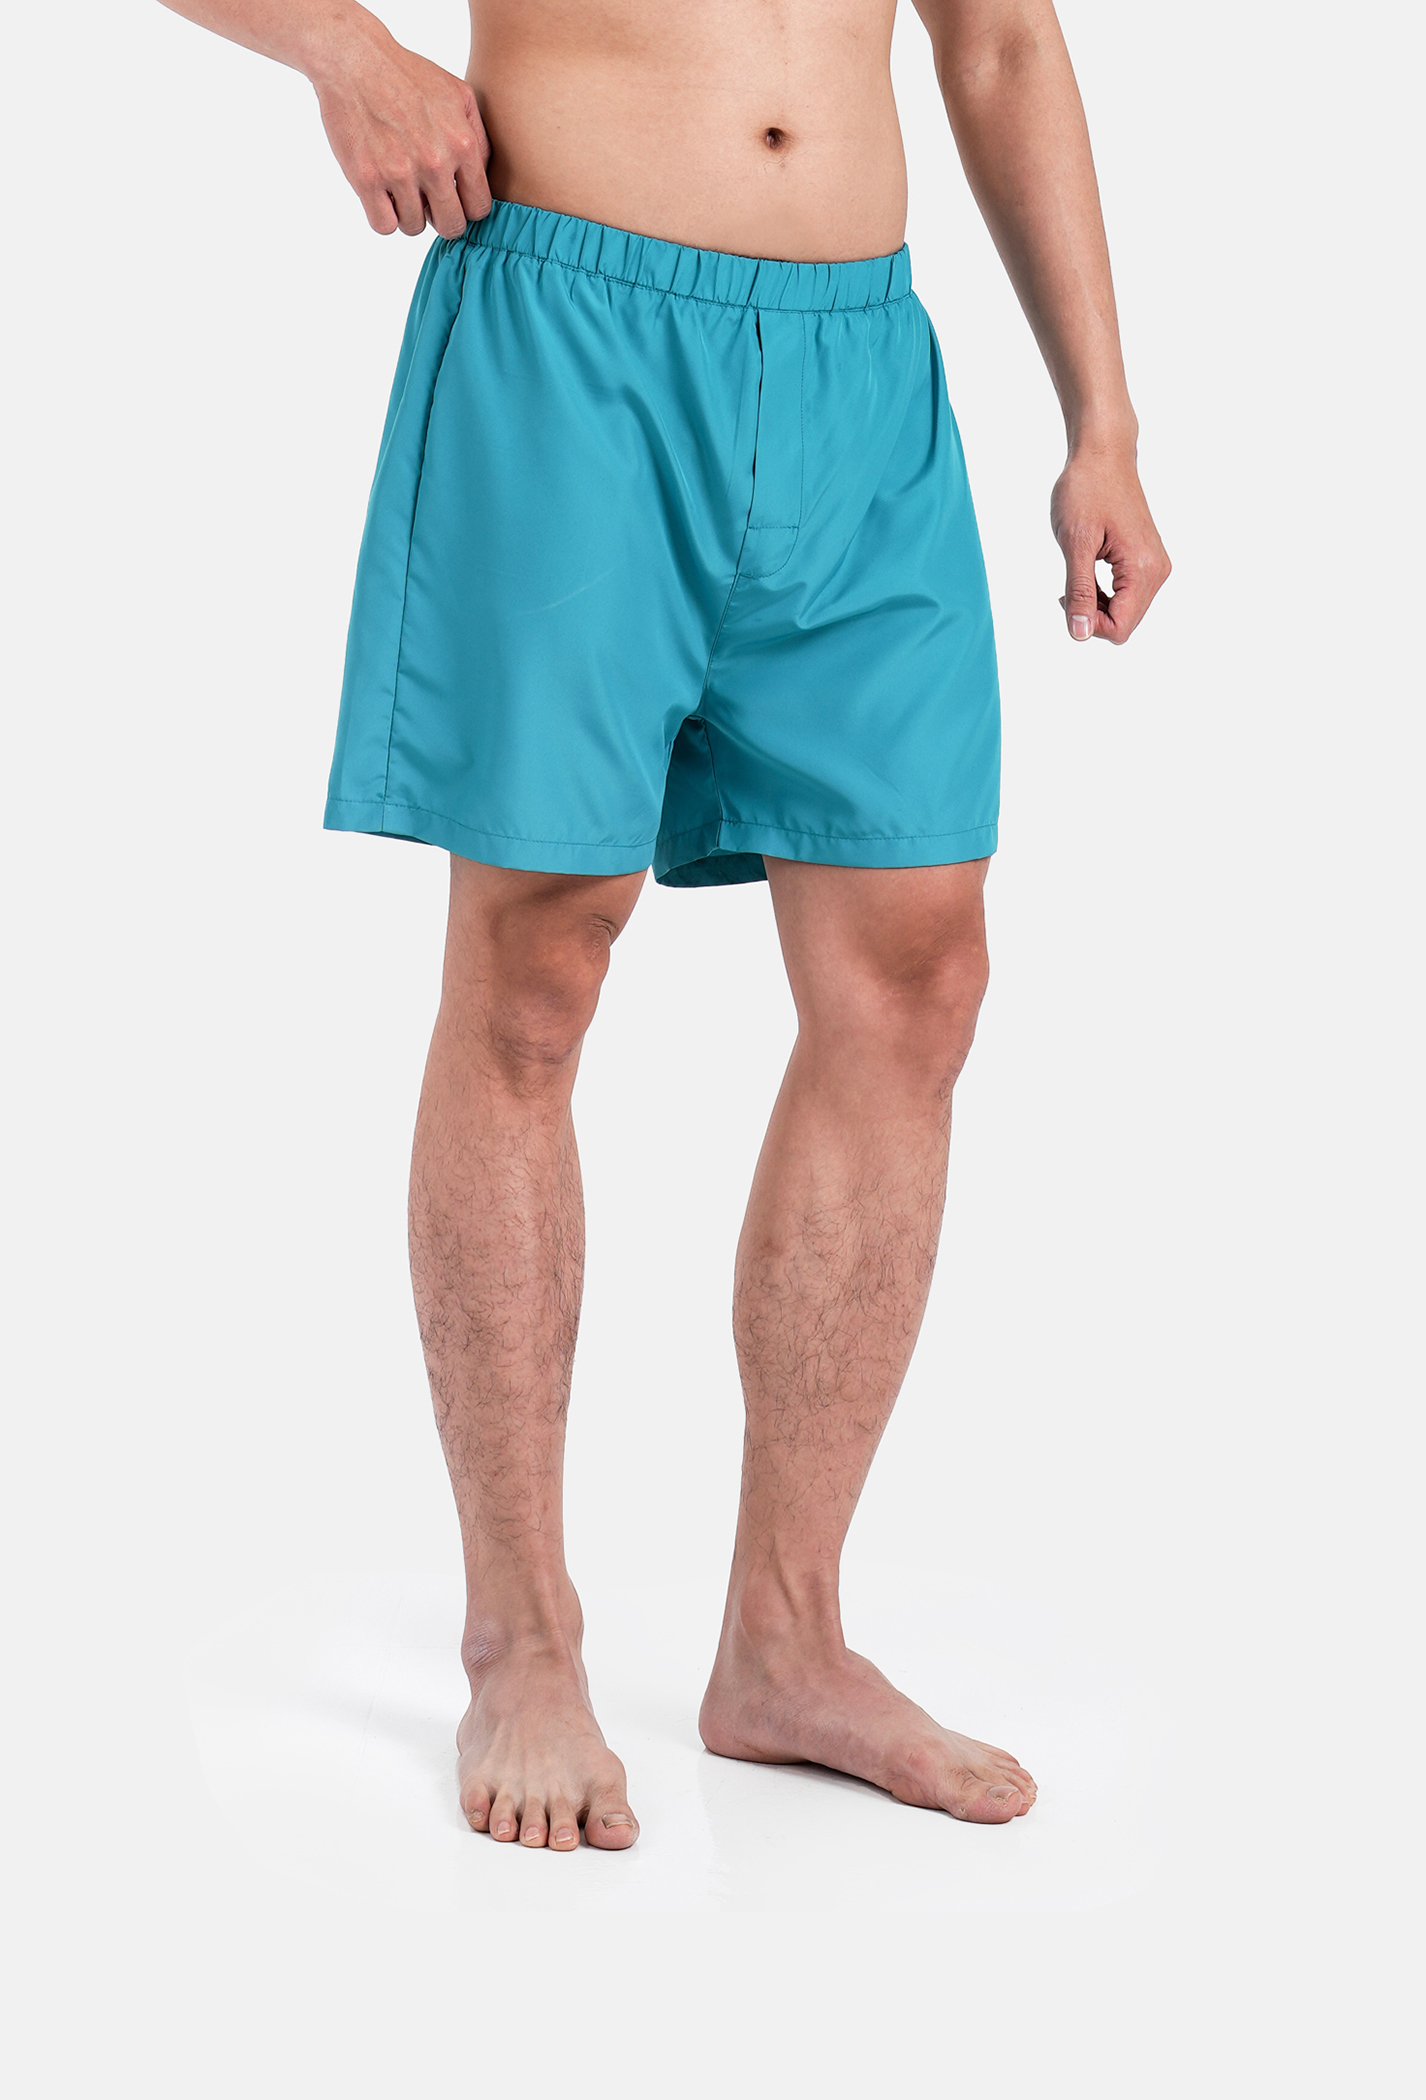 Quần Shorts mặc nhà Coolmate Basics Xanh ngọc 2